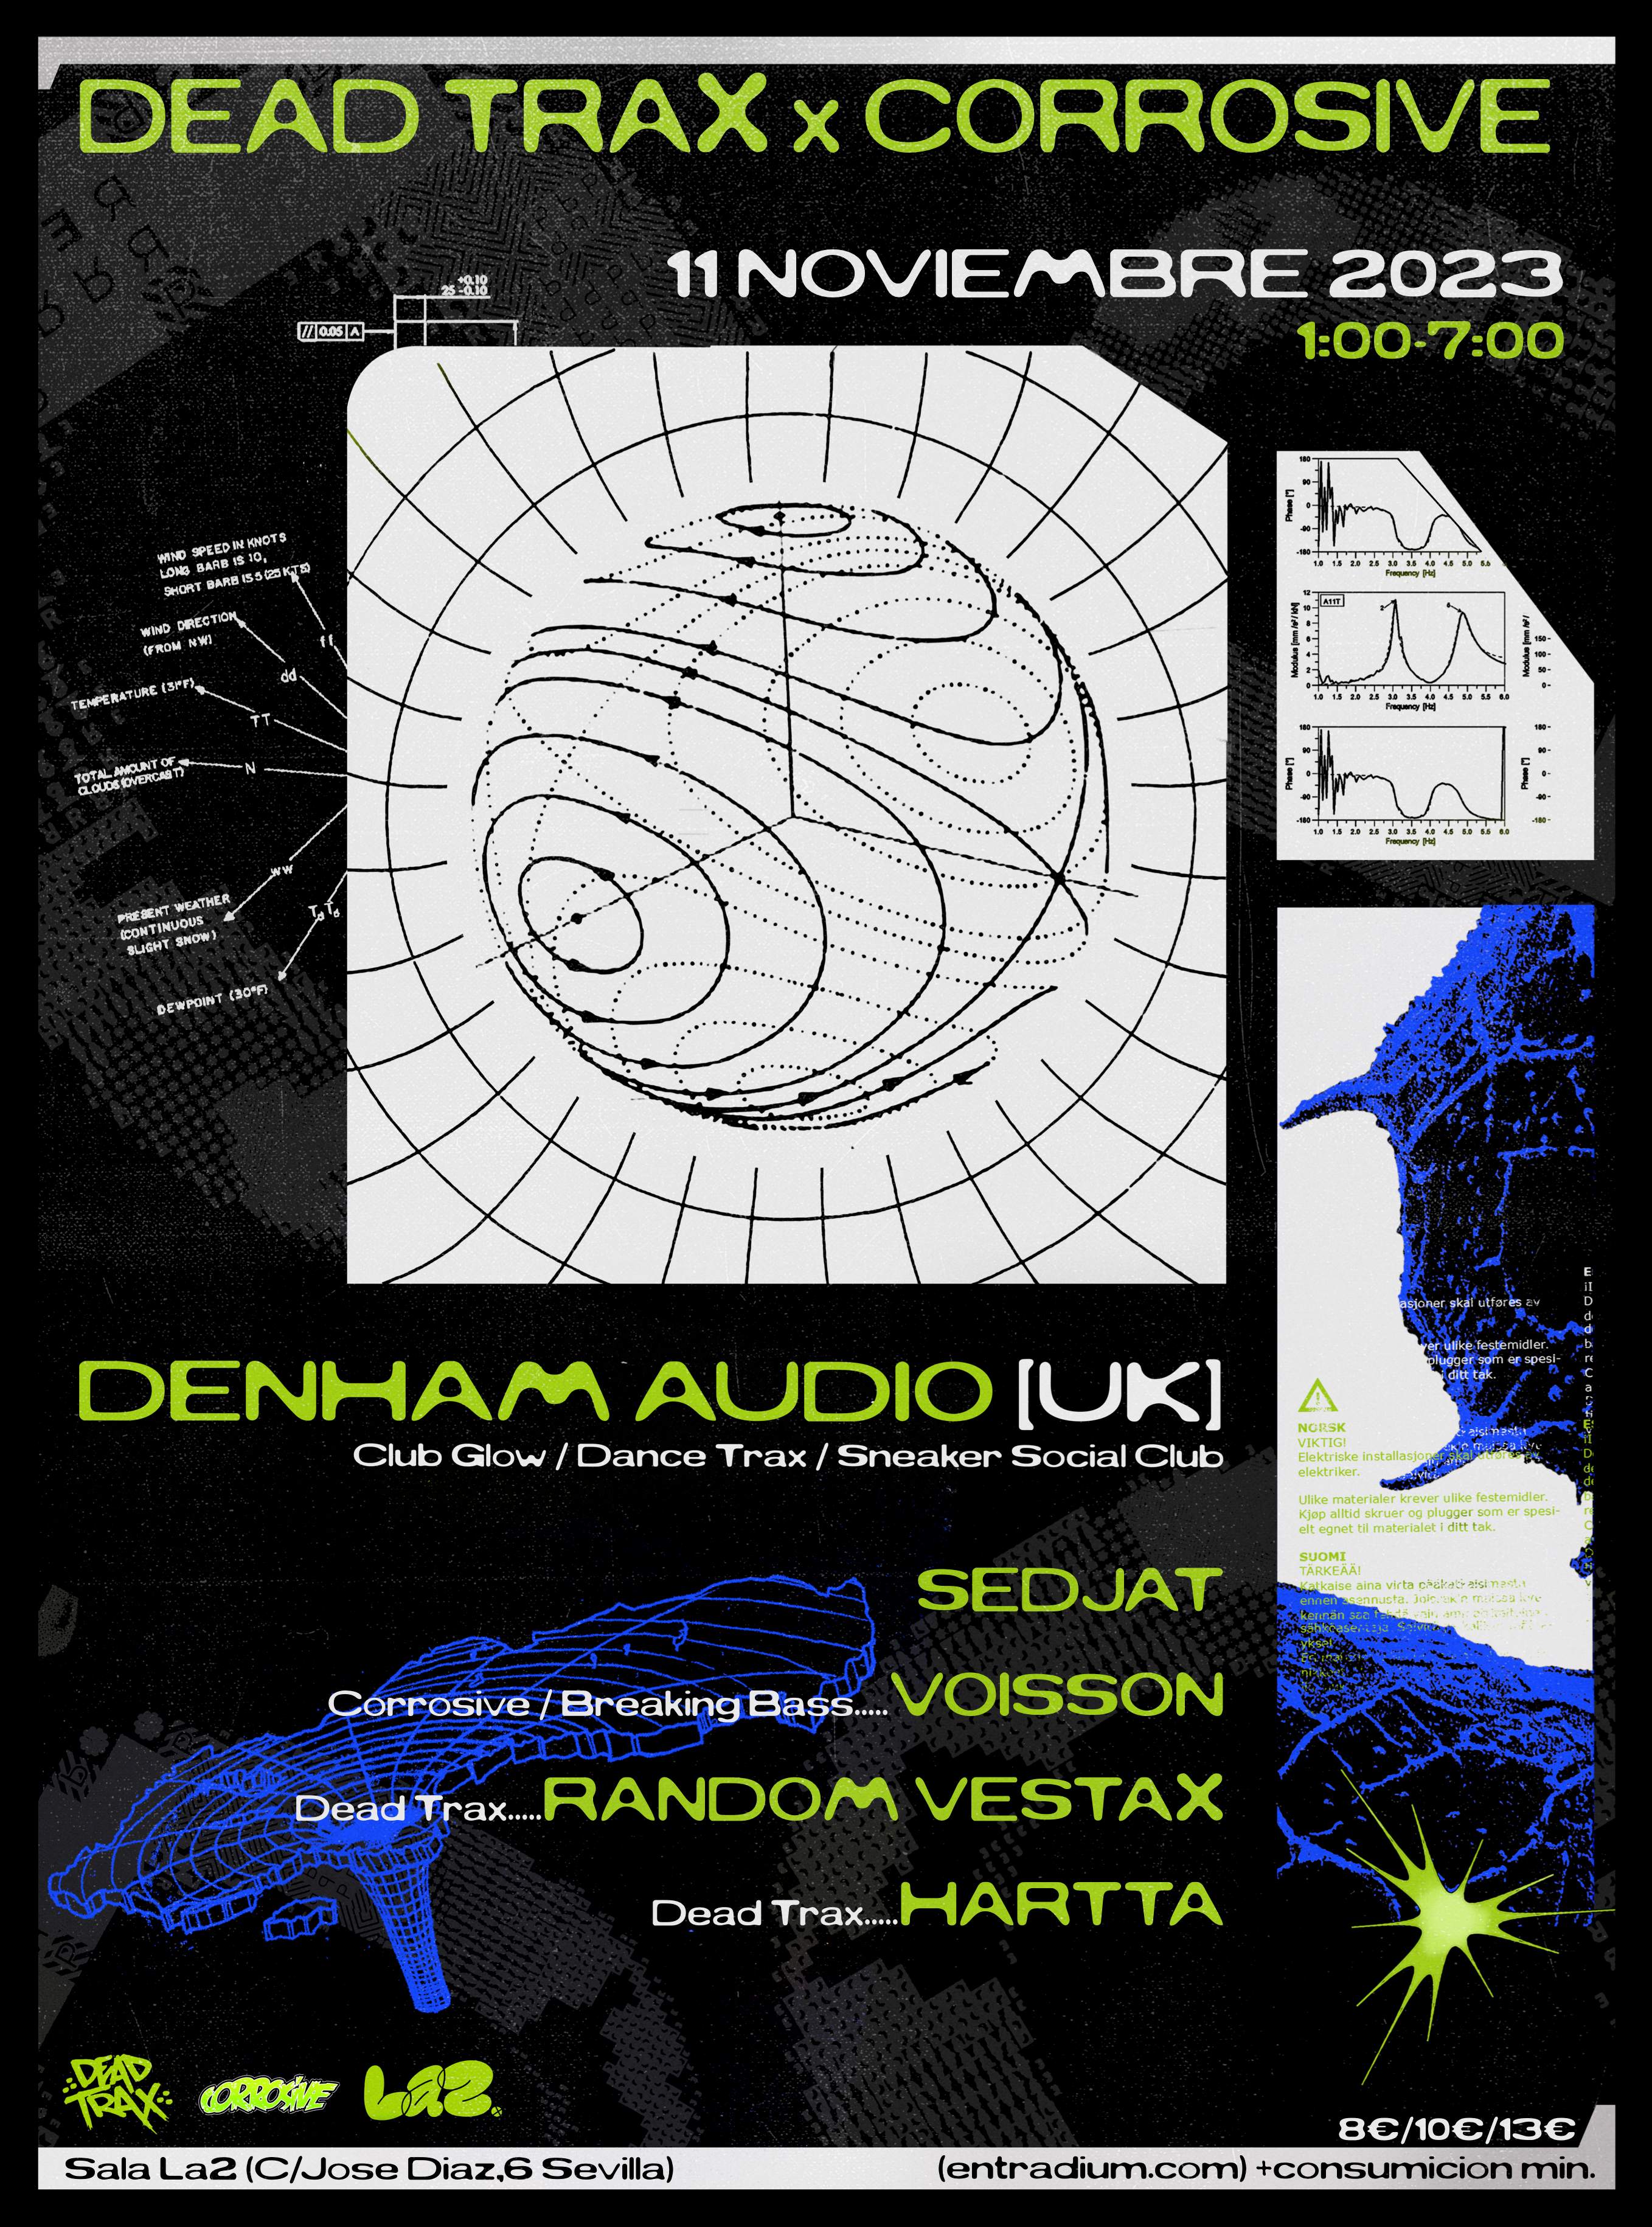 Dead Trax & Corrosive · Denham Audio, Sedjat, Voisson, Random Vestax, Hartta - Página frontal